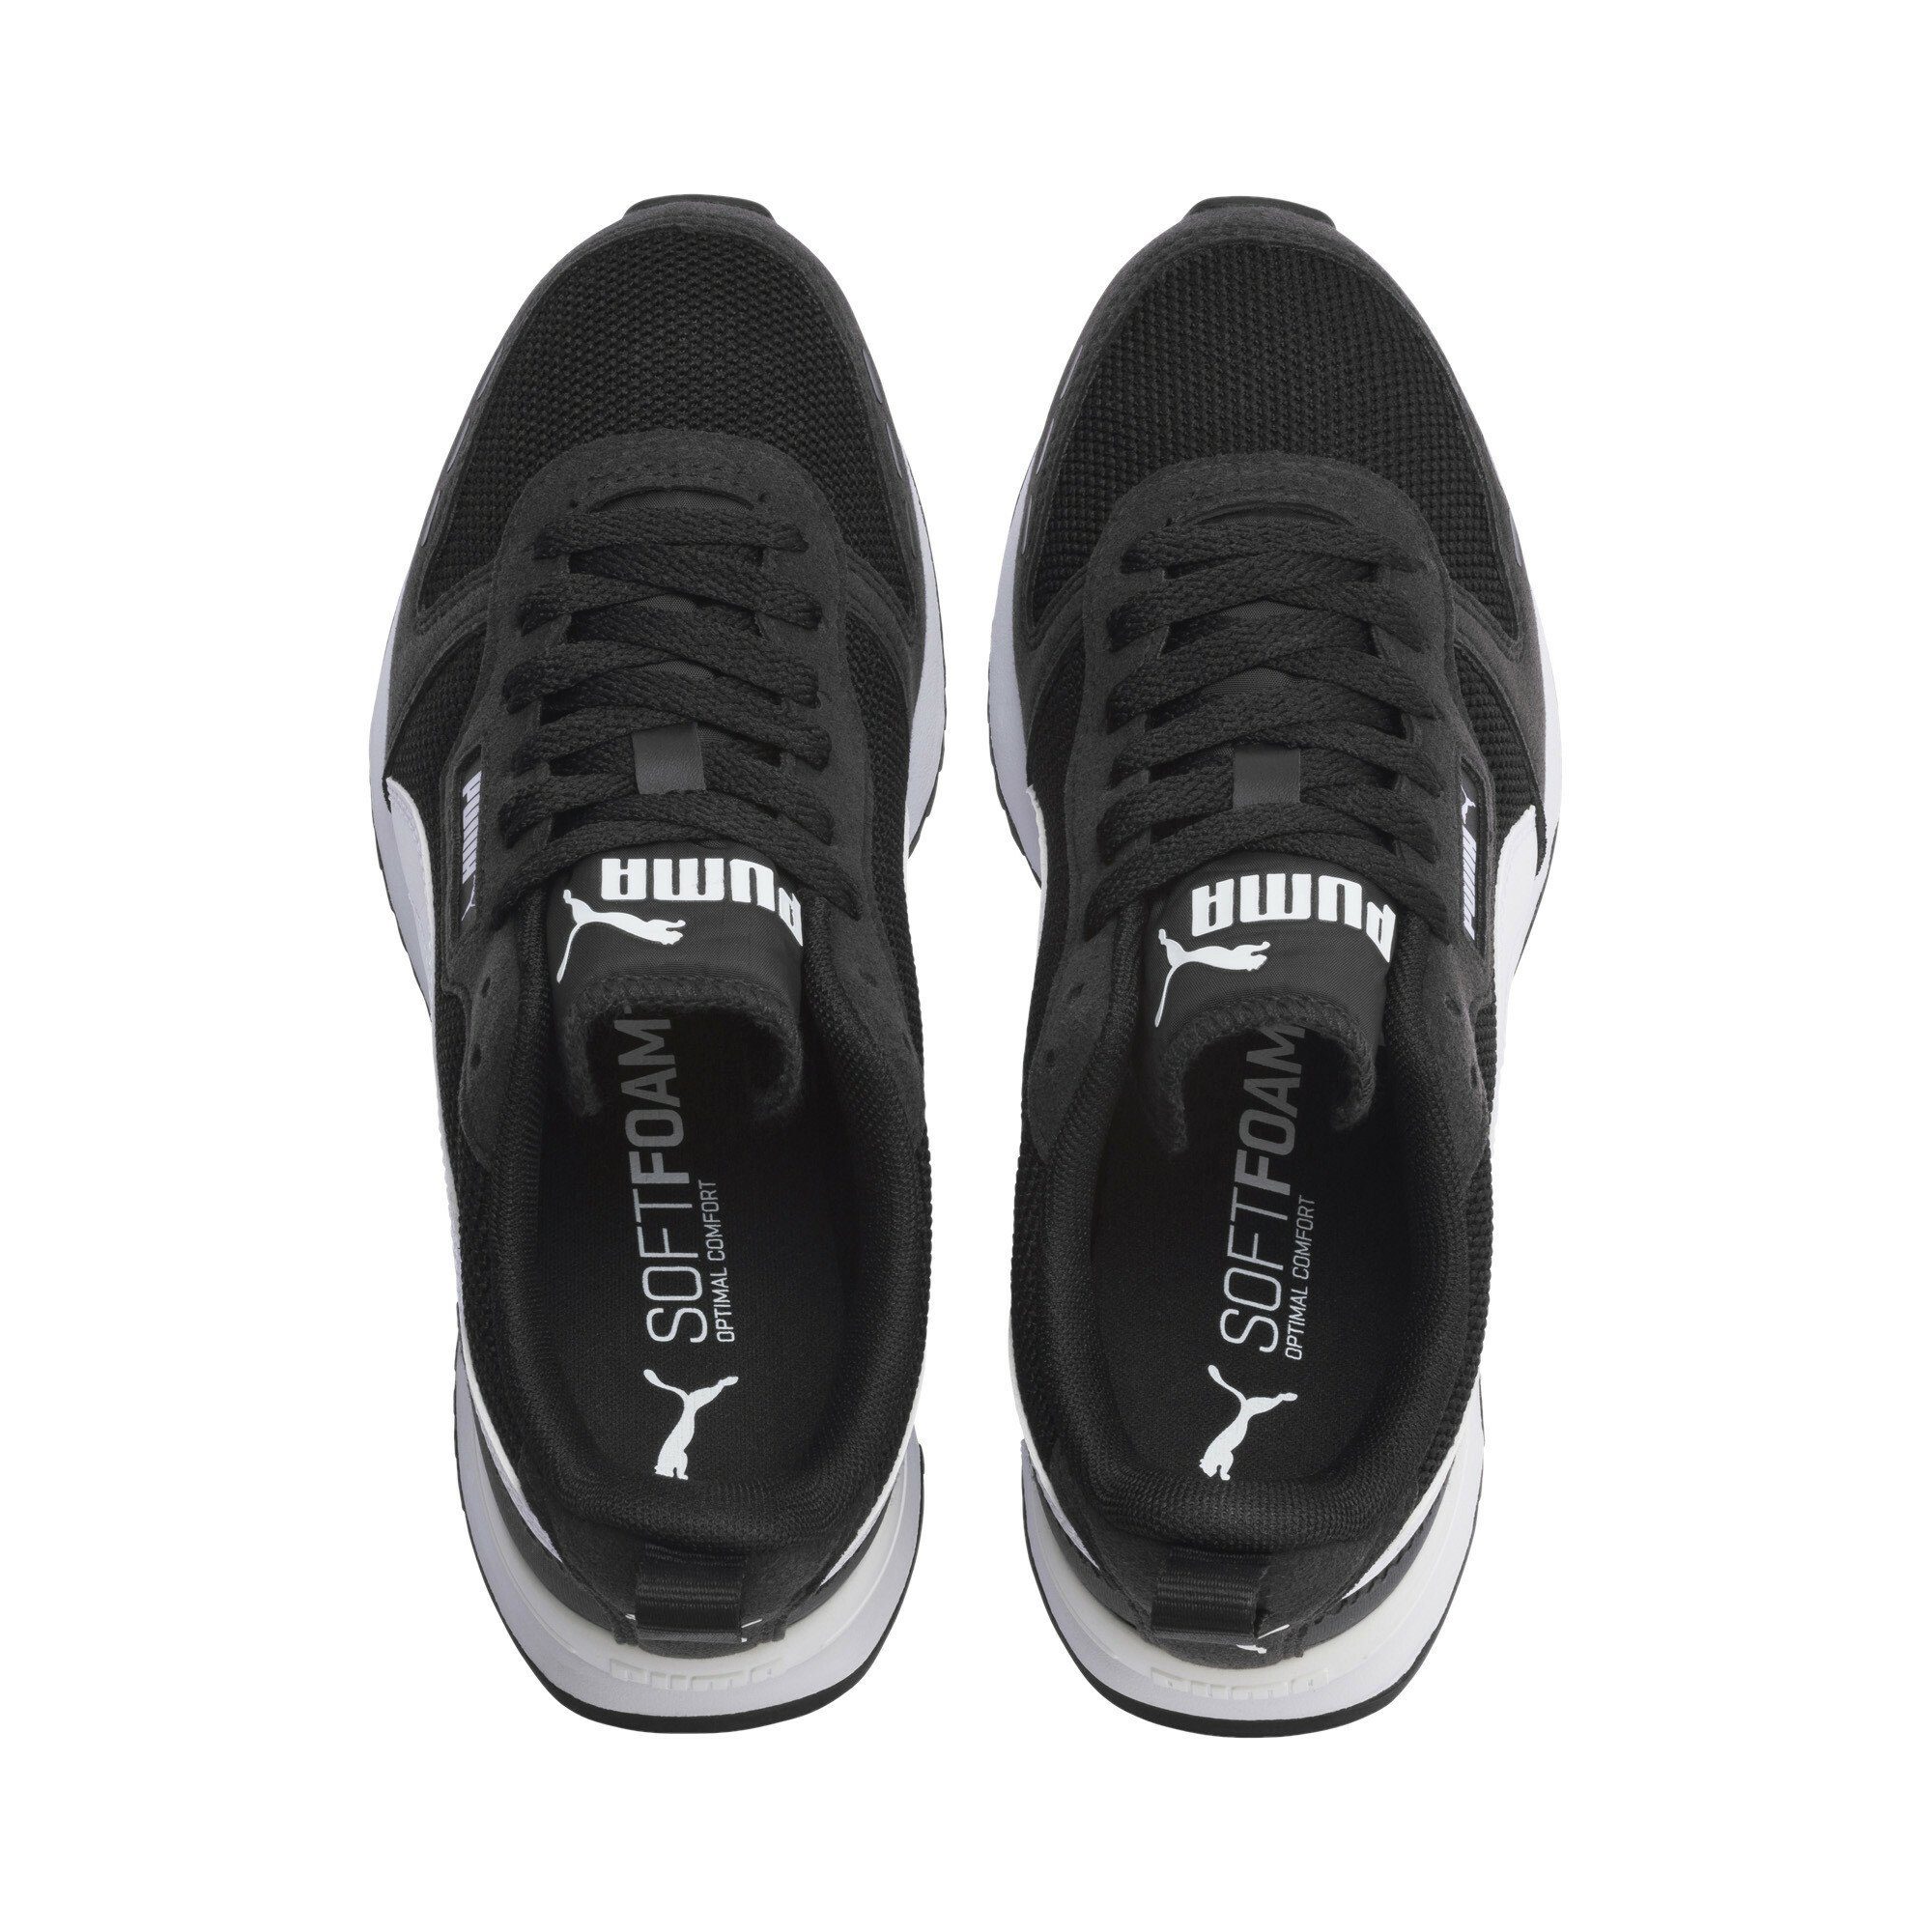 White Jugendliche Laufschuh PUMA Sneakers Black R78